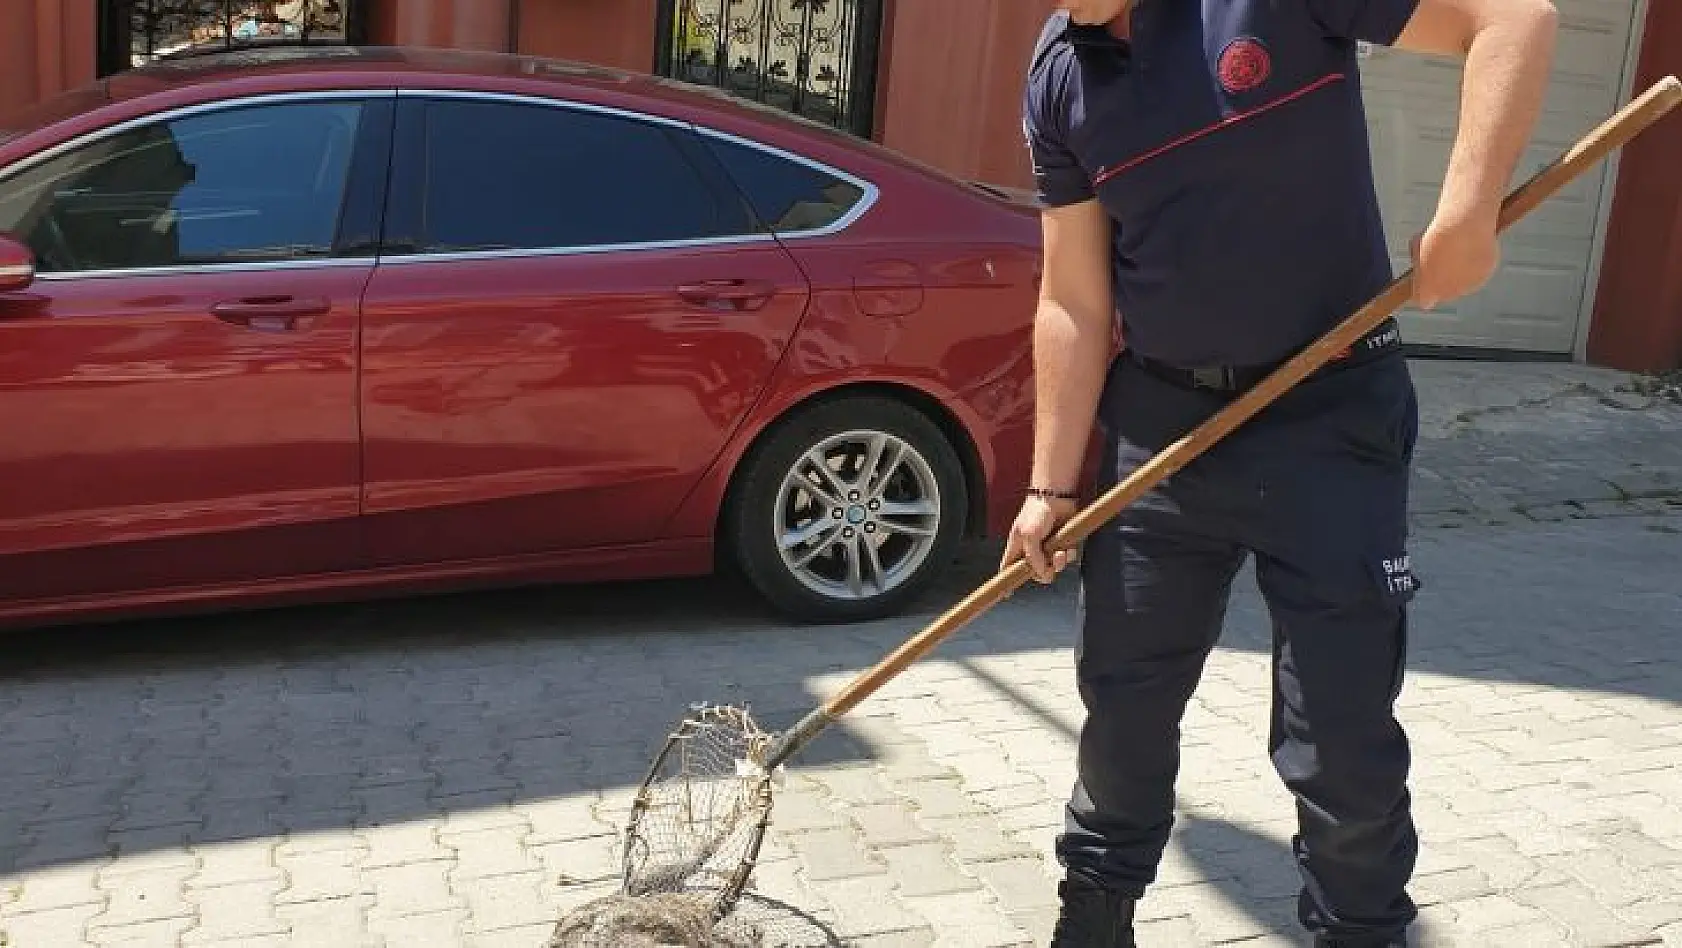 Bandırma'da cadde üzerinde gezen kokarca itfaiye ekipleri tarafından yakalandı